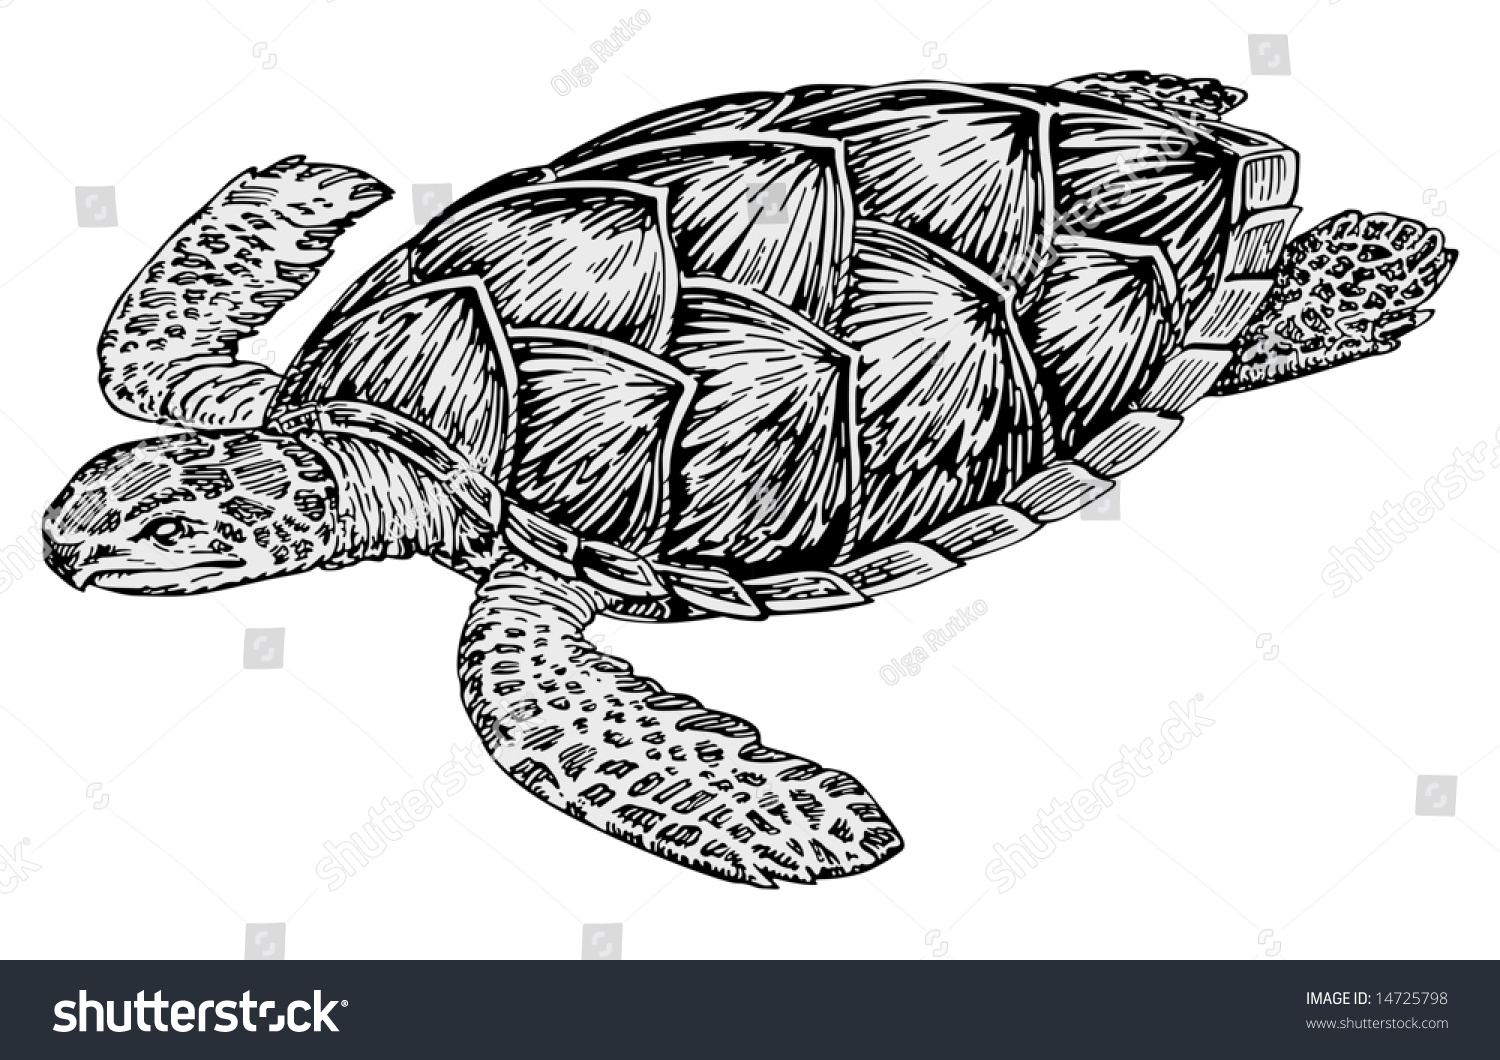 Turtle Vector - 14725798 : Shutterstock